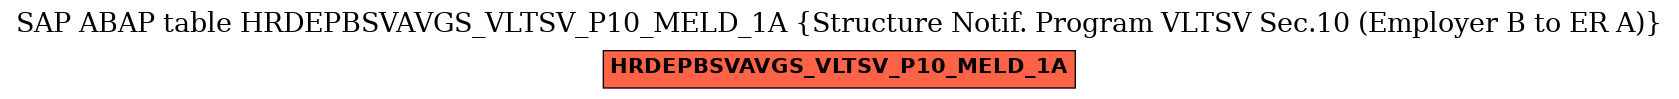 E-R Diagram for table HRDEPBSVAVGS_VLTSV_P10_MELD_1A (Structure Notif. Program VLTSV Sec.10 (Employer B to ER A))